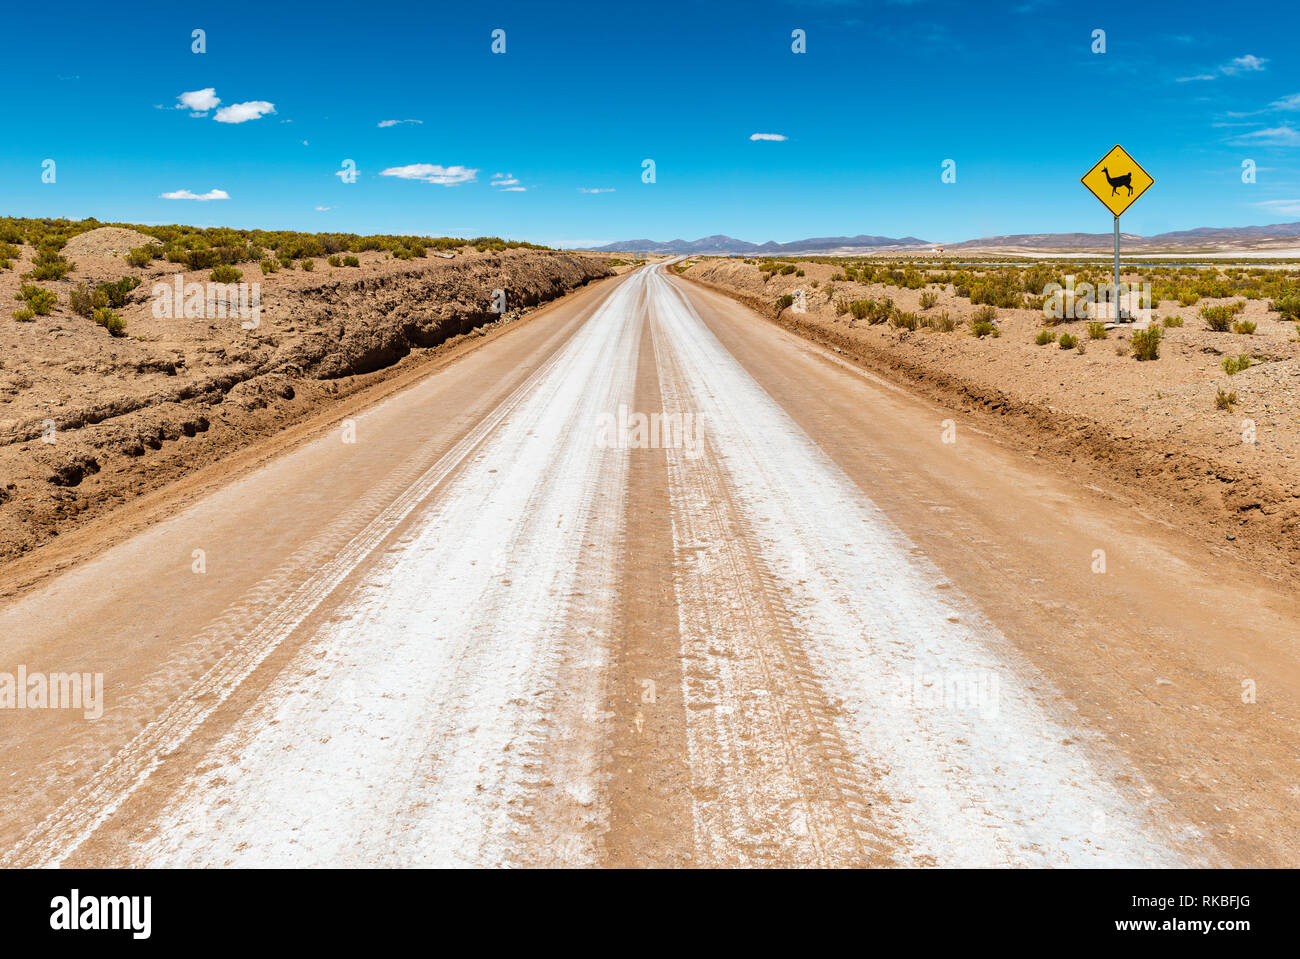 Photographie de paysage d'une autoroute, route dans la région de sel d'Uyuni (Salar de Uyuni) avec un panneau danger : llama sur la route ! La Bolivie, l'Amérique du Sud. Banque D'Images